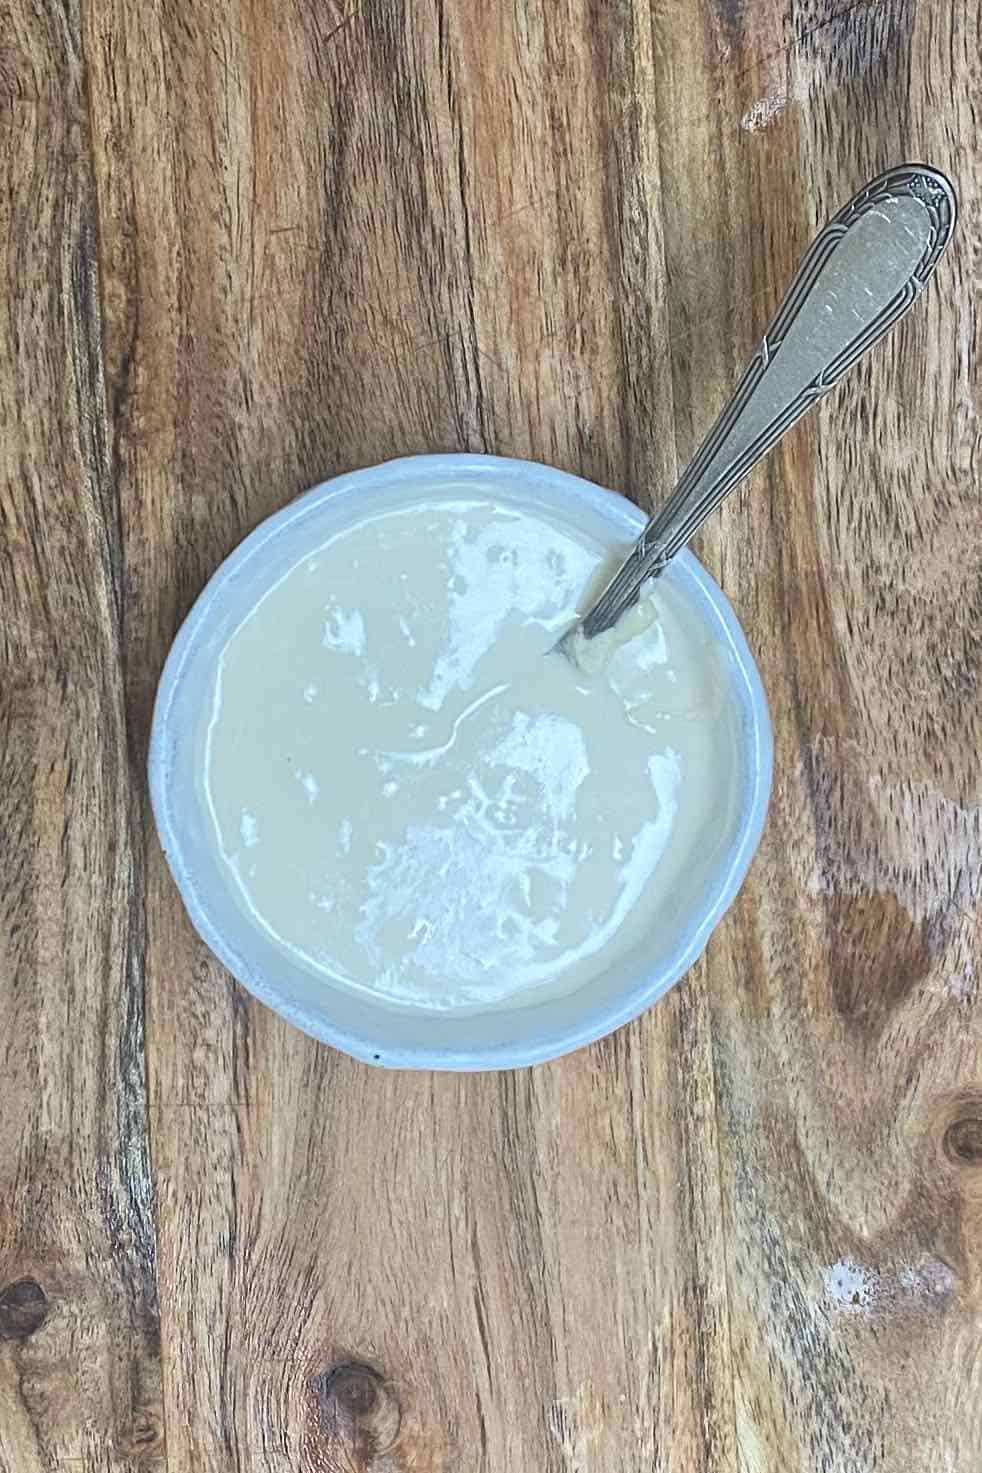 Tahini sauce in a small bowl